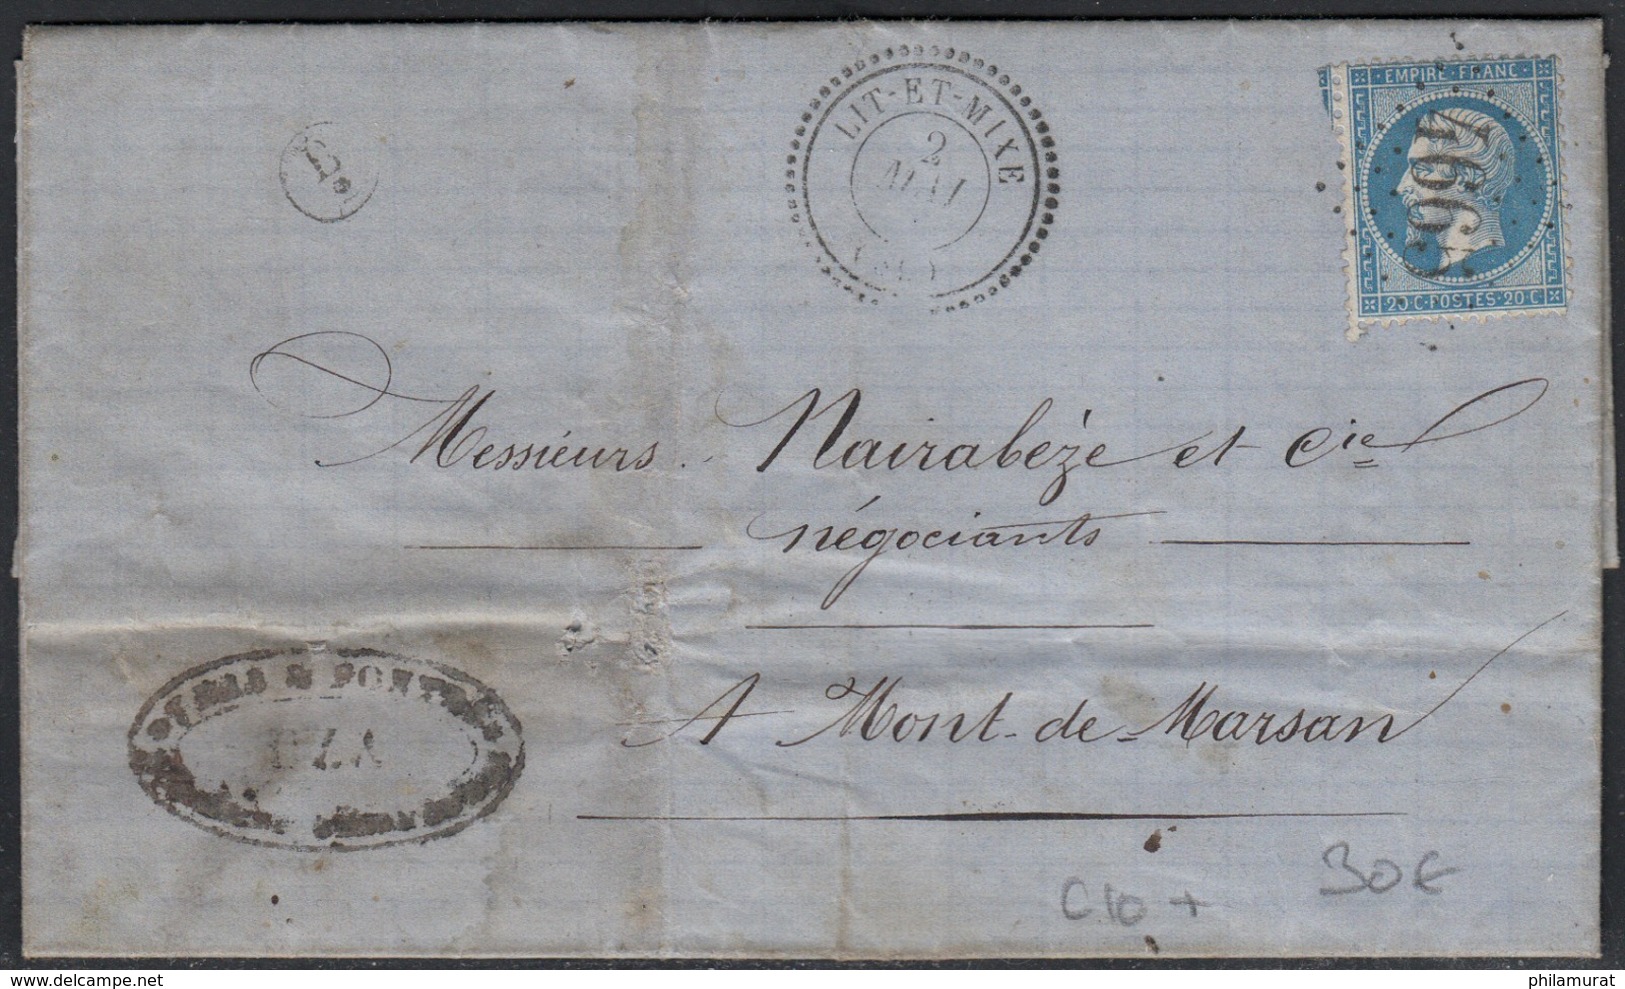 Histoire postale département 39 LANDES : lot de 6 lettres avant 1900